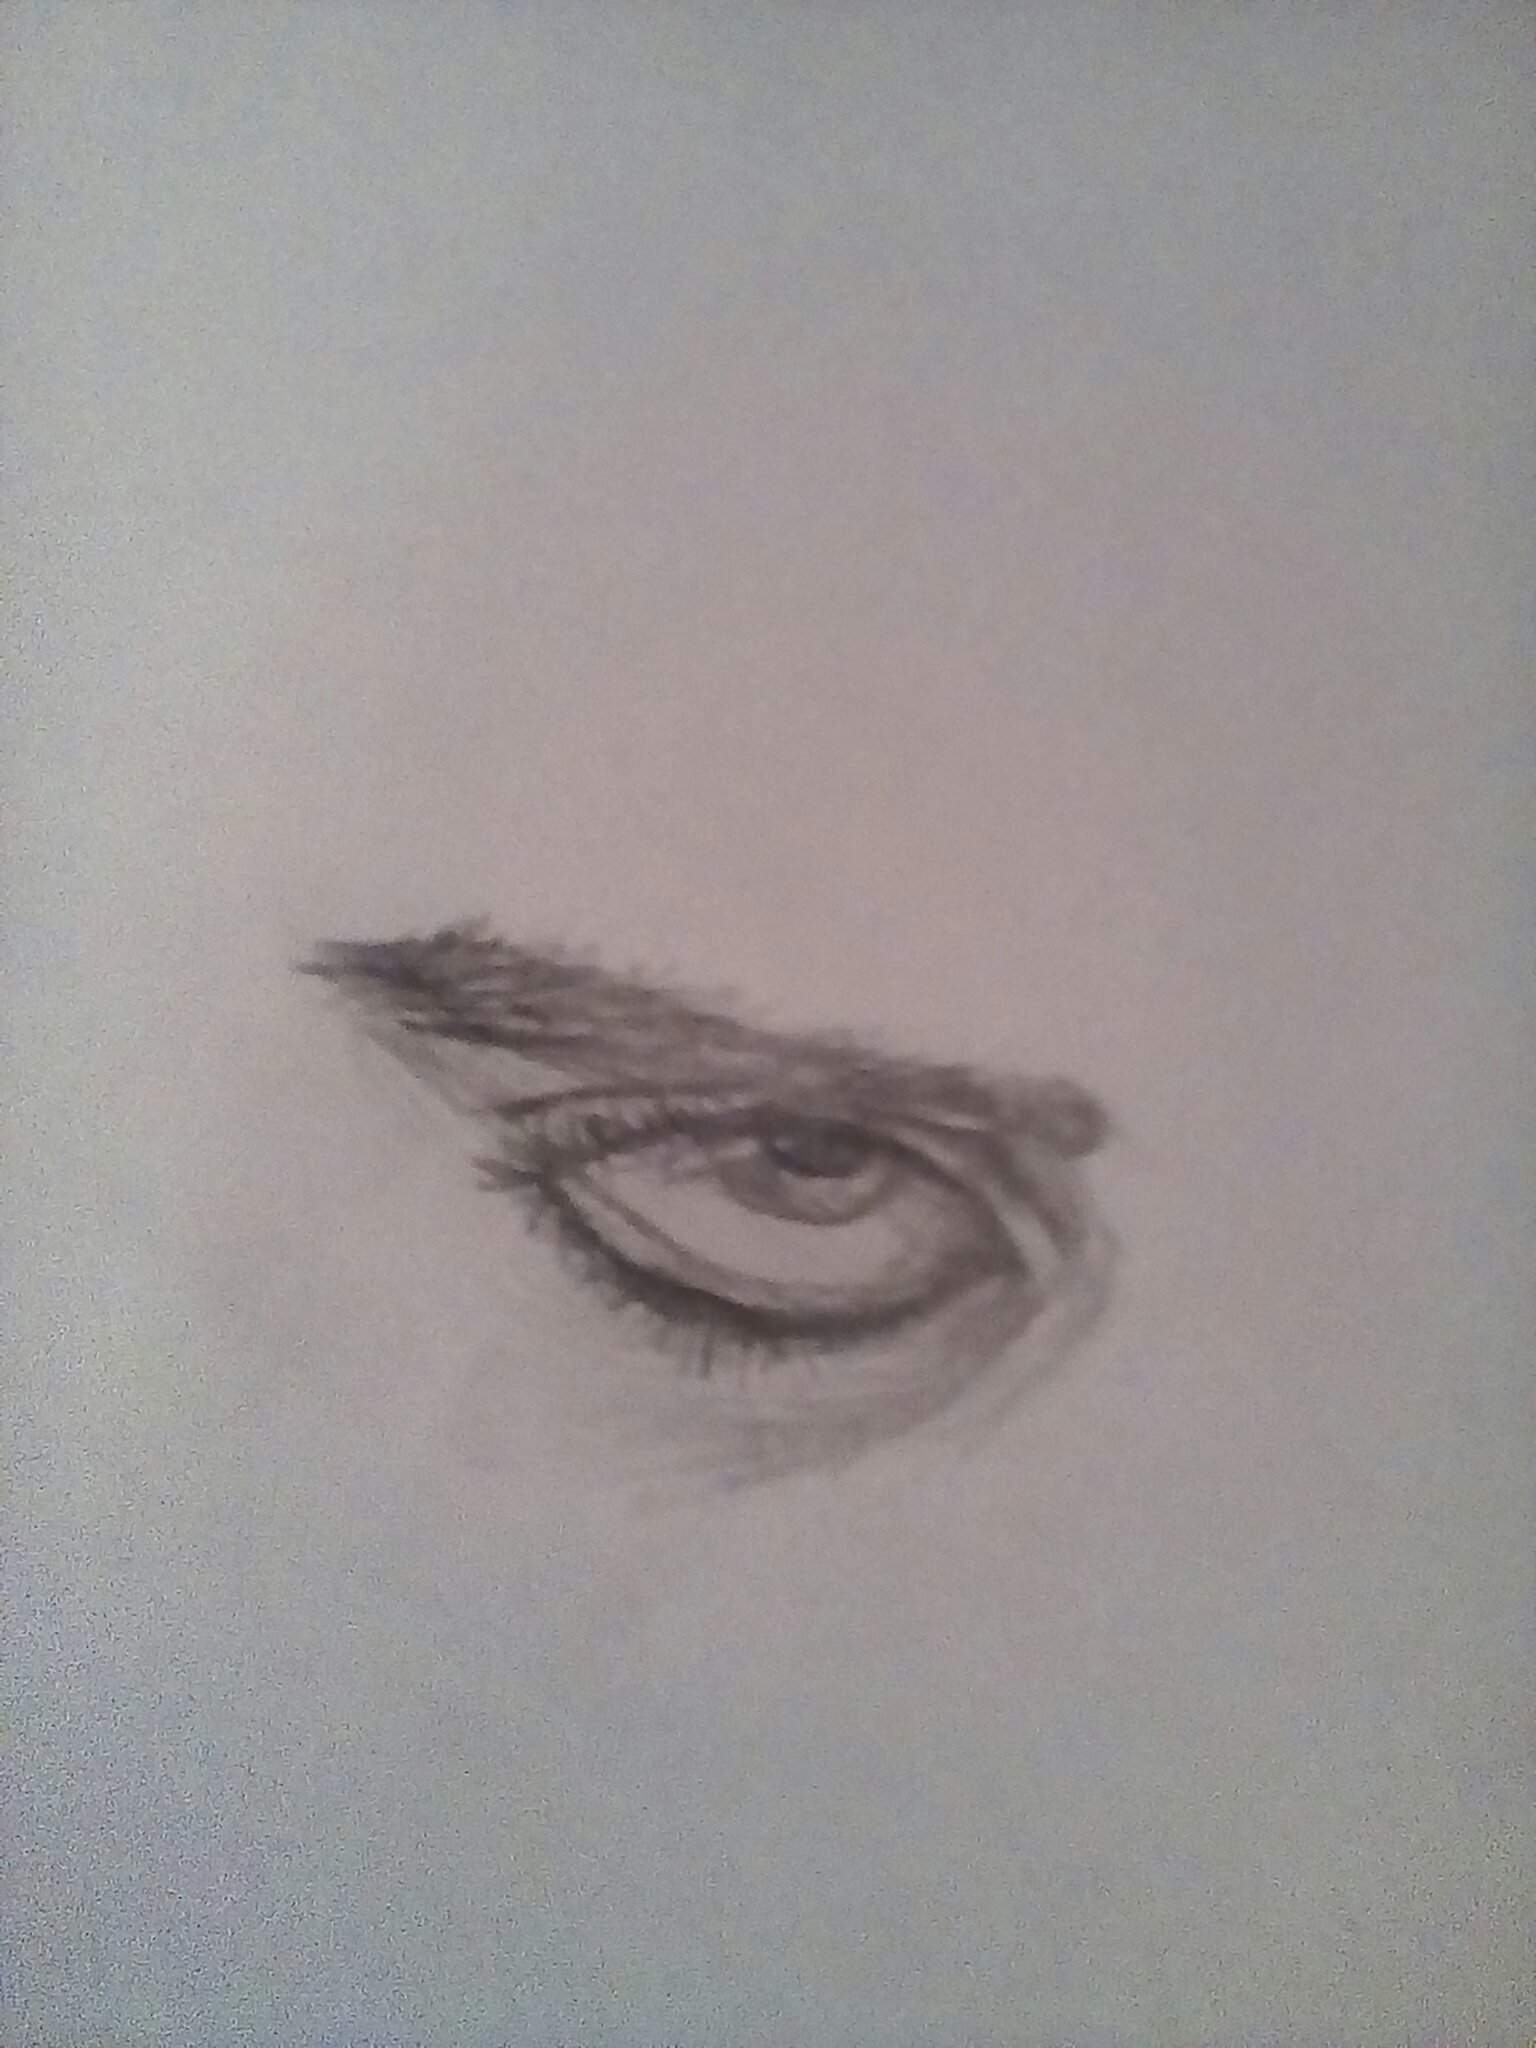 angry eye drawing